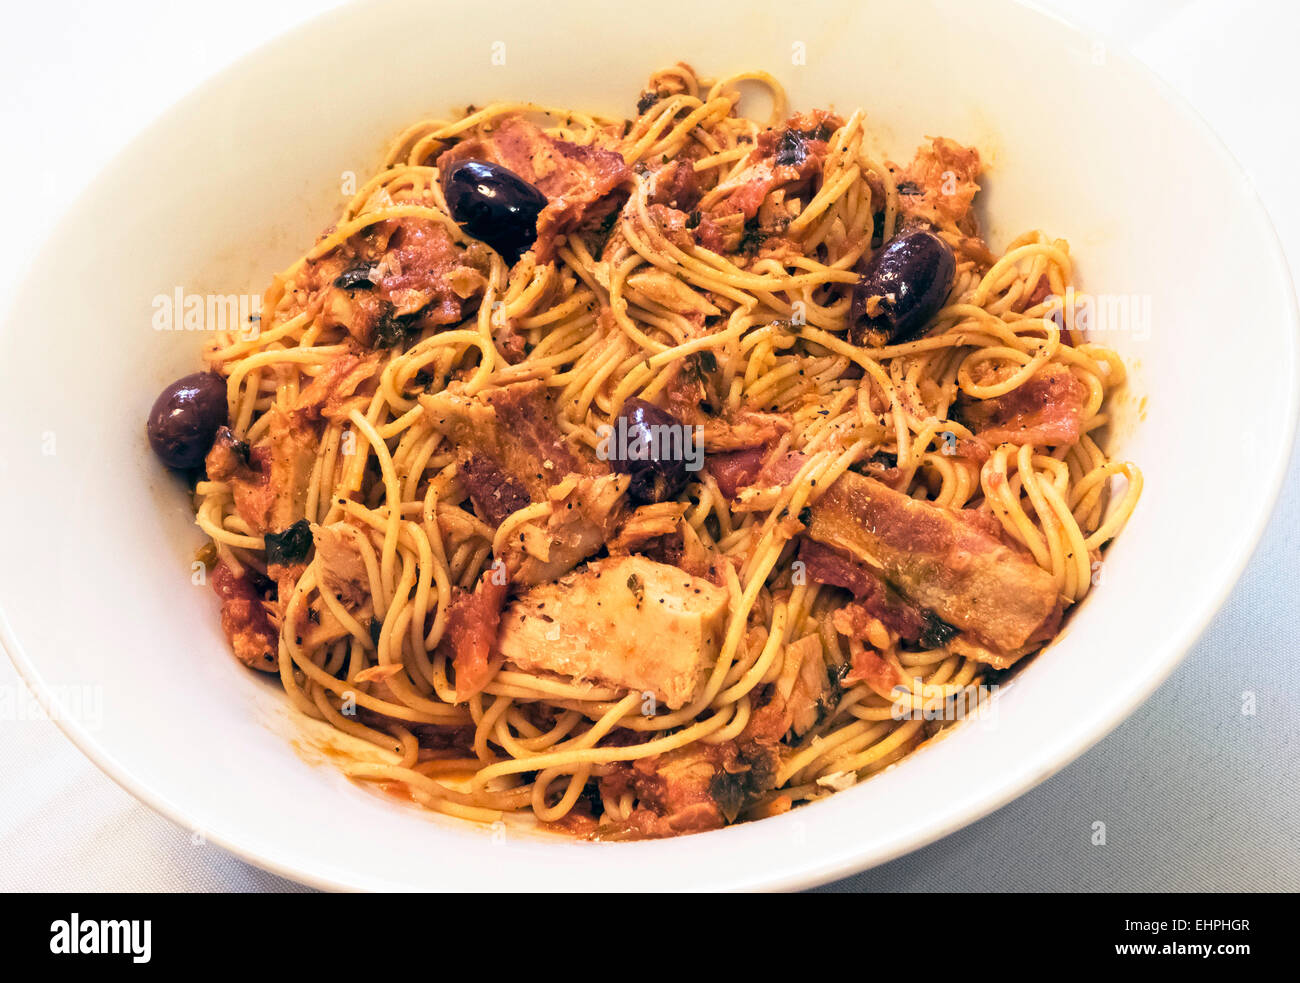 Espaguetis con atún, bacon, aceitunas y salsa de tomate en un recipiente blanco Foto de stock